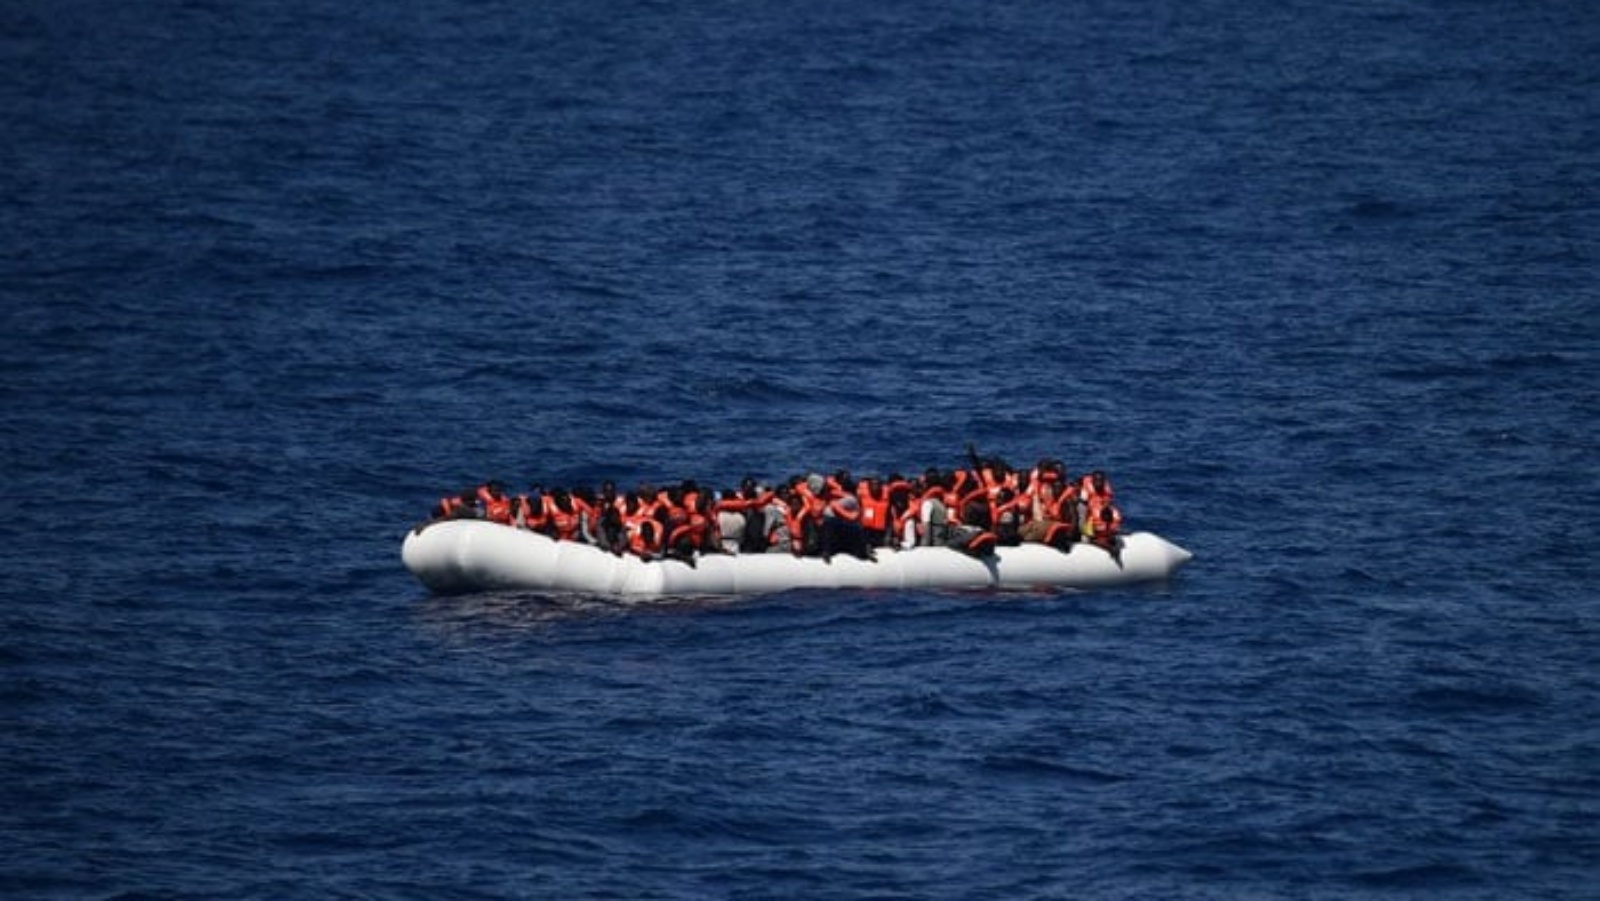 لاجئون ينتظرون على قارب مطاطي ليتم إنقاذهم خلال عملية في البحر